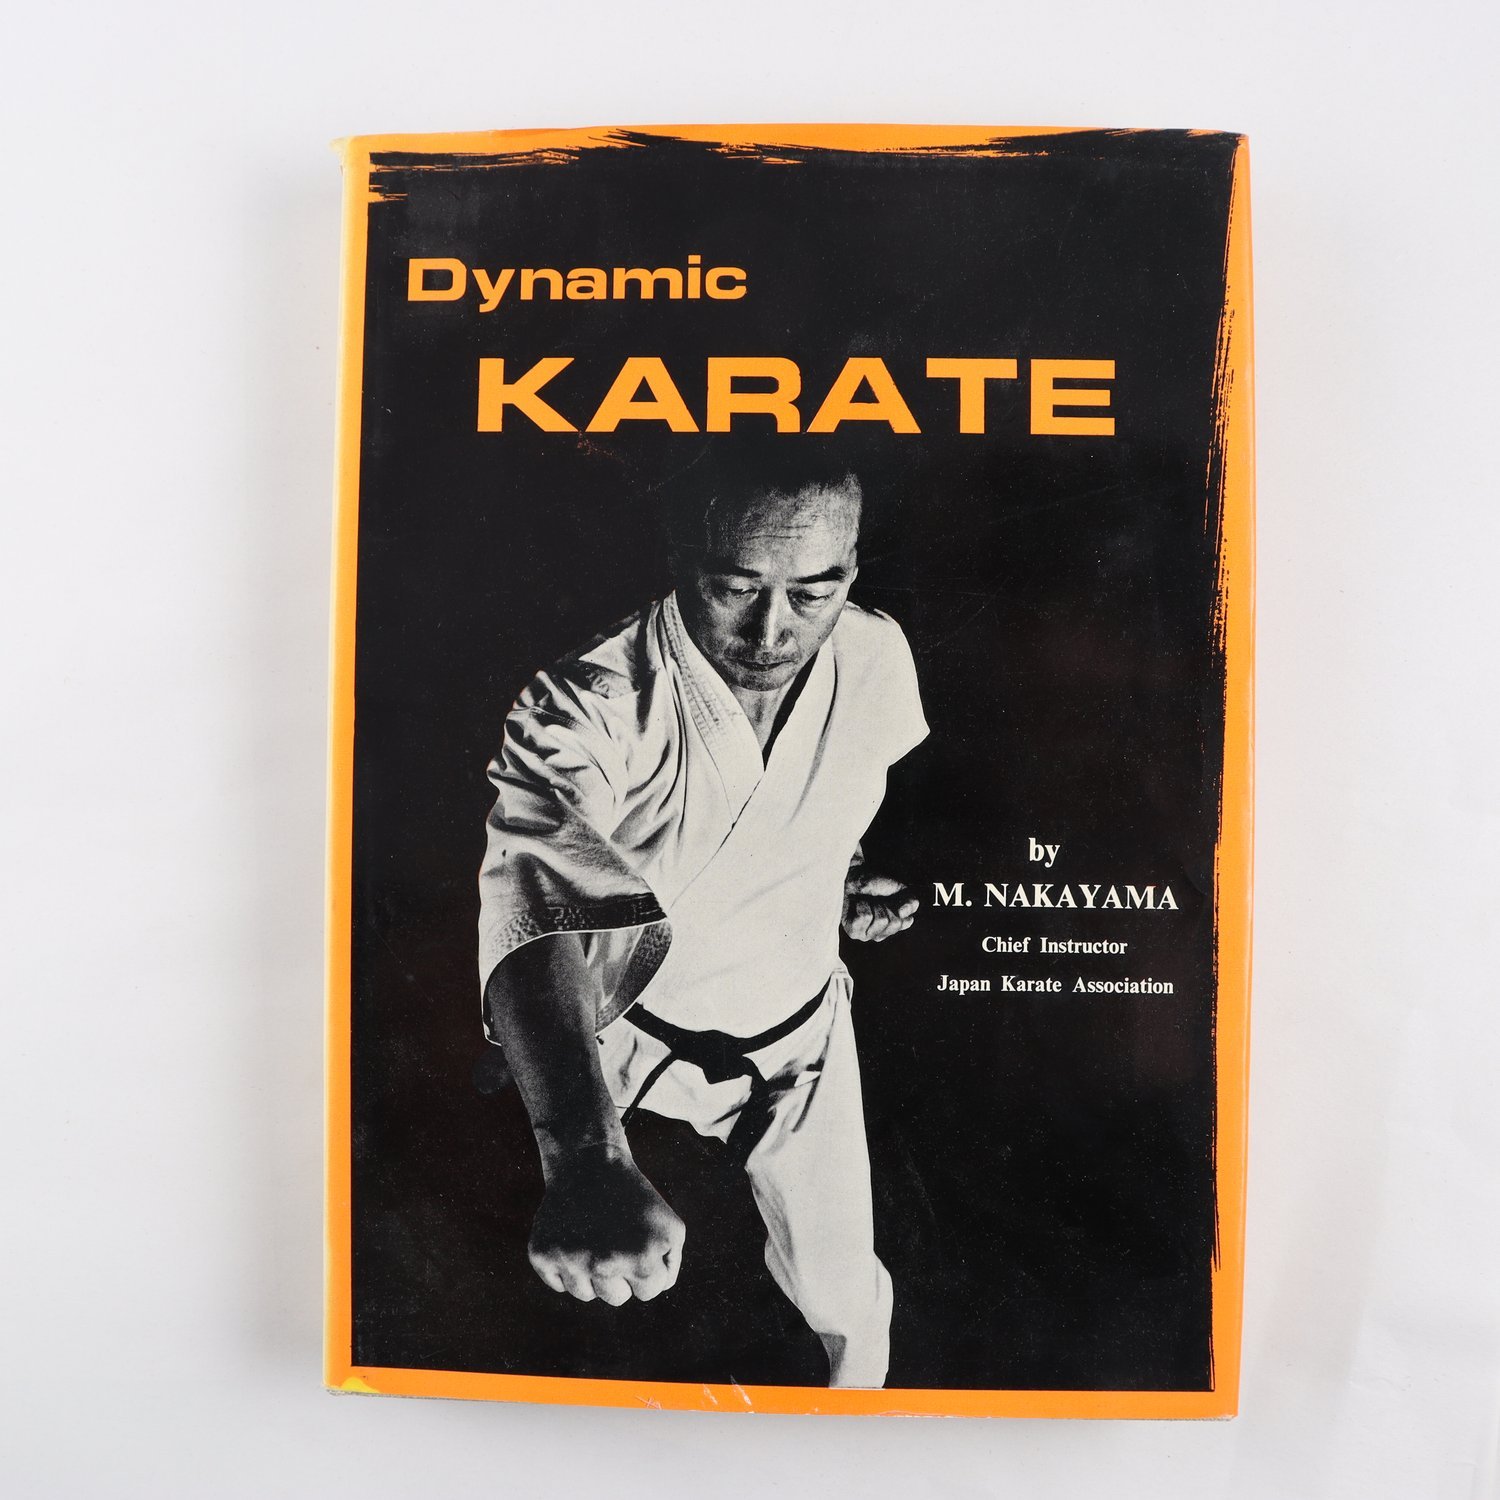 Dynamic Karate, by M. Nakayama